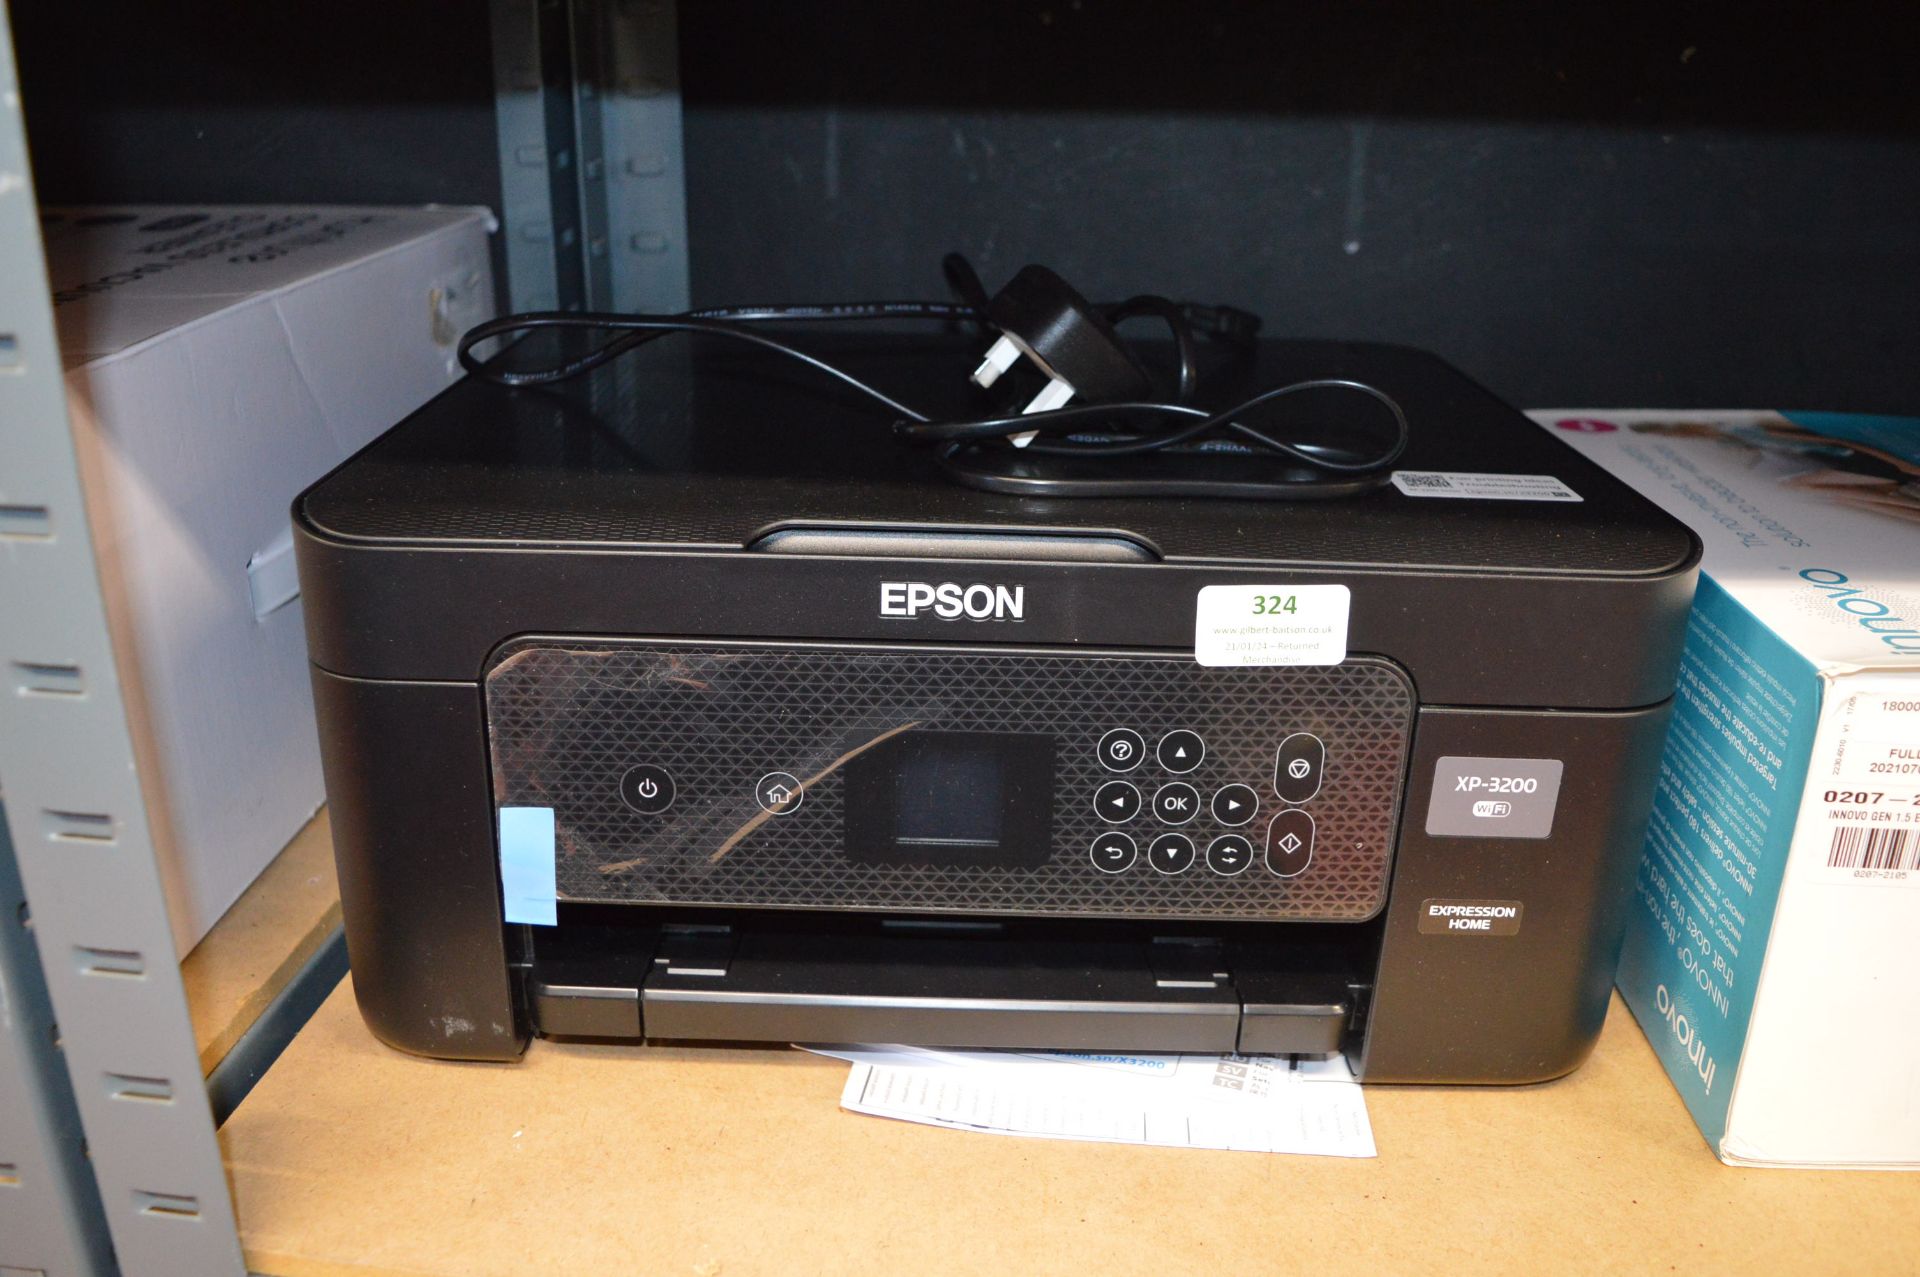 *Epson XP-3200 Printer